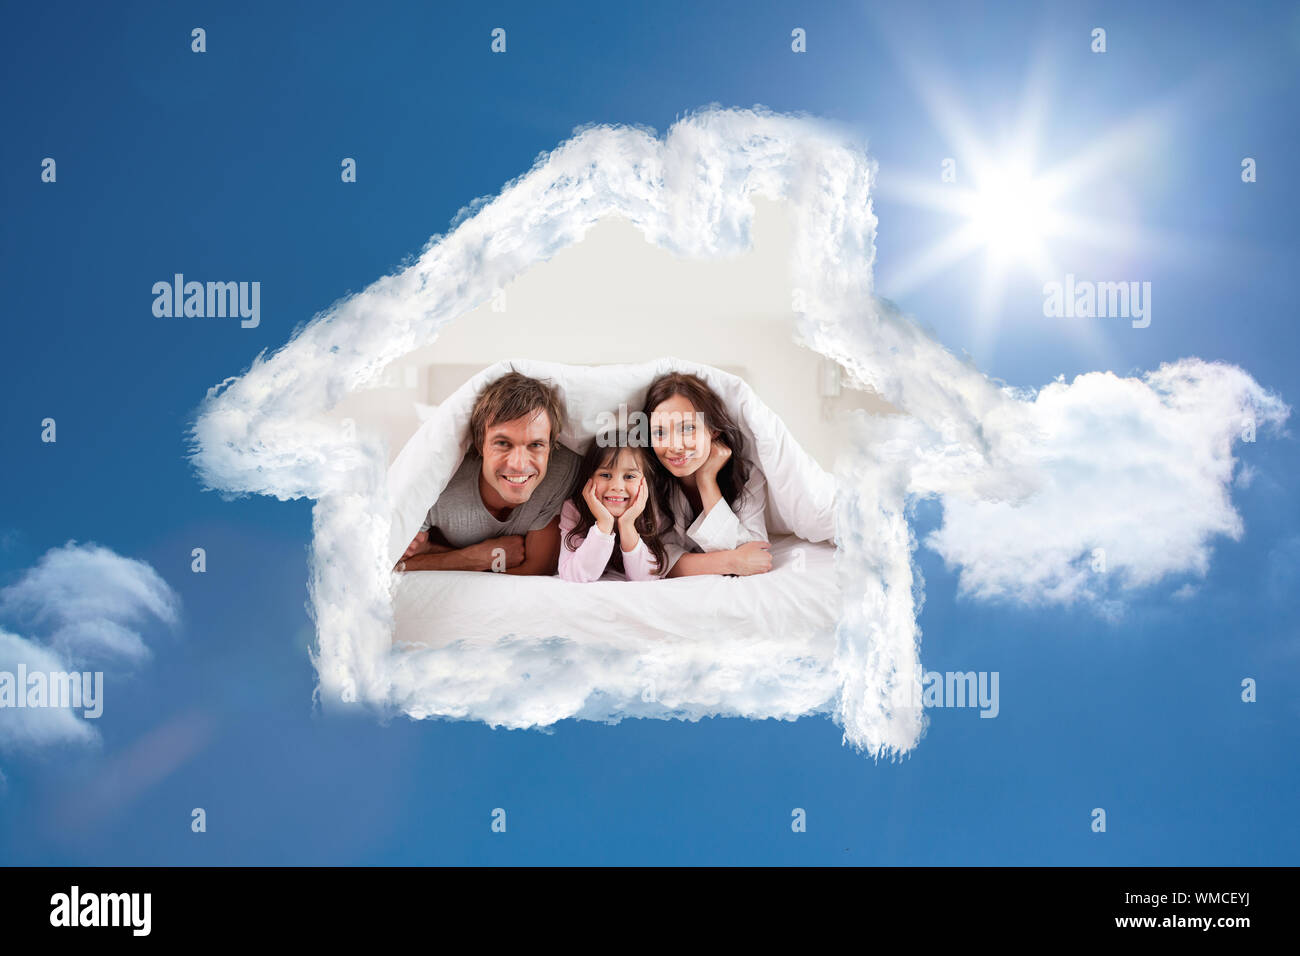 Lächelnd Eltern unter einer Bettdecke, und mit ihrer Tochter gegen strahlend blauen Himmel mit Wolken Stockfoto